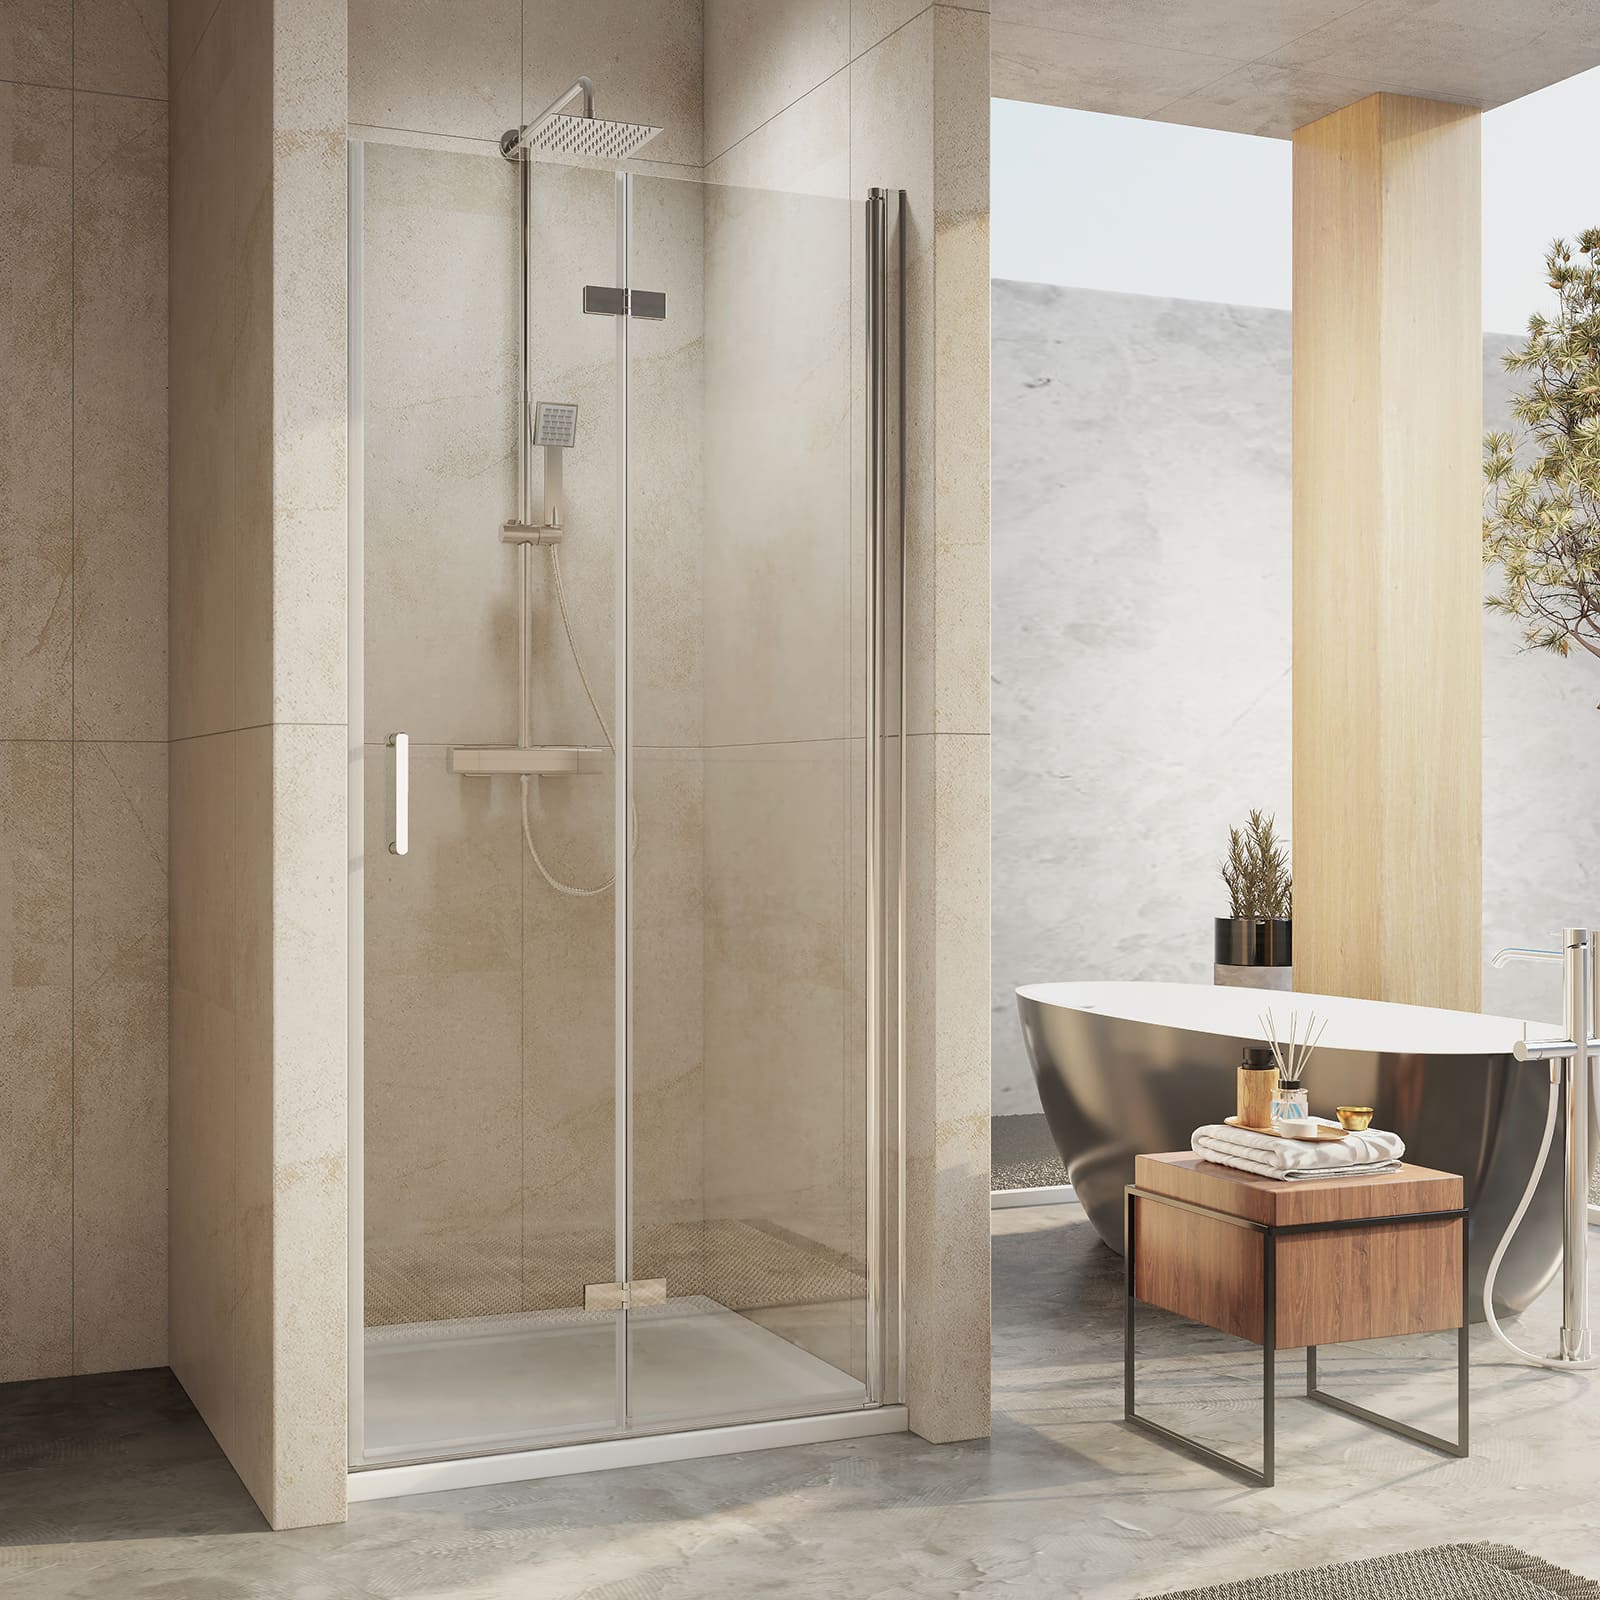 Artikelbeschreibung: Rahmenlose Duschtür mit Falt-Funktion für den Einbau in Nischen-Duschen. Höhe: 195 cm.. Maße: Diese hochwertige Duschtür mit Falt-Funktion ist in unterschiedlichen Abmessungen verfügbar: 75x195cm